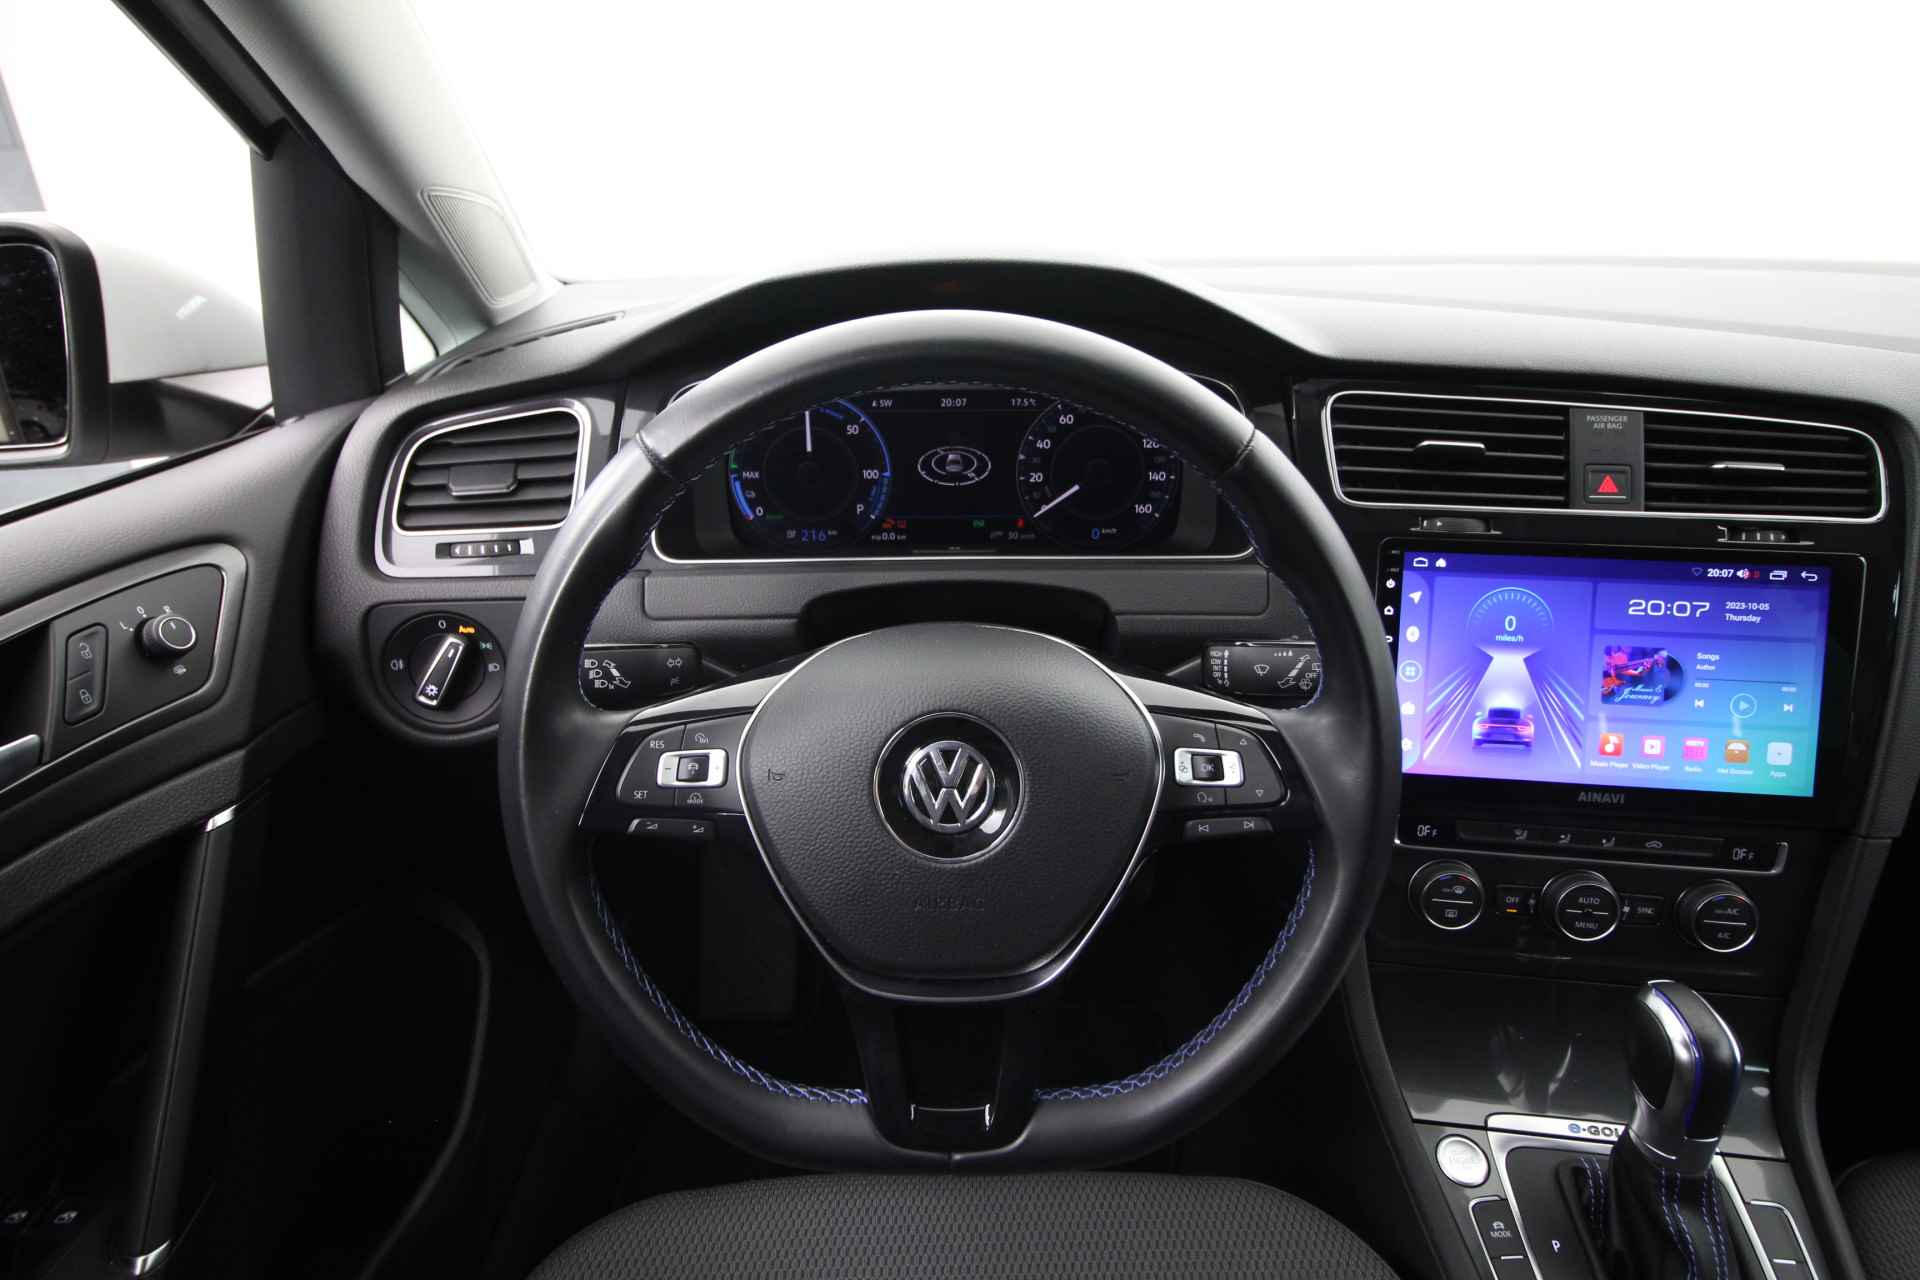 Volkswagen e-Golf Navigatie,cam,Lm velgen 32350 km!!! - 12/21